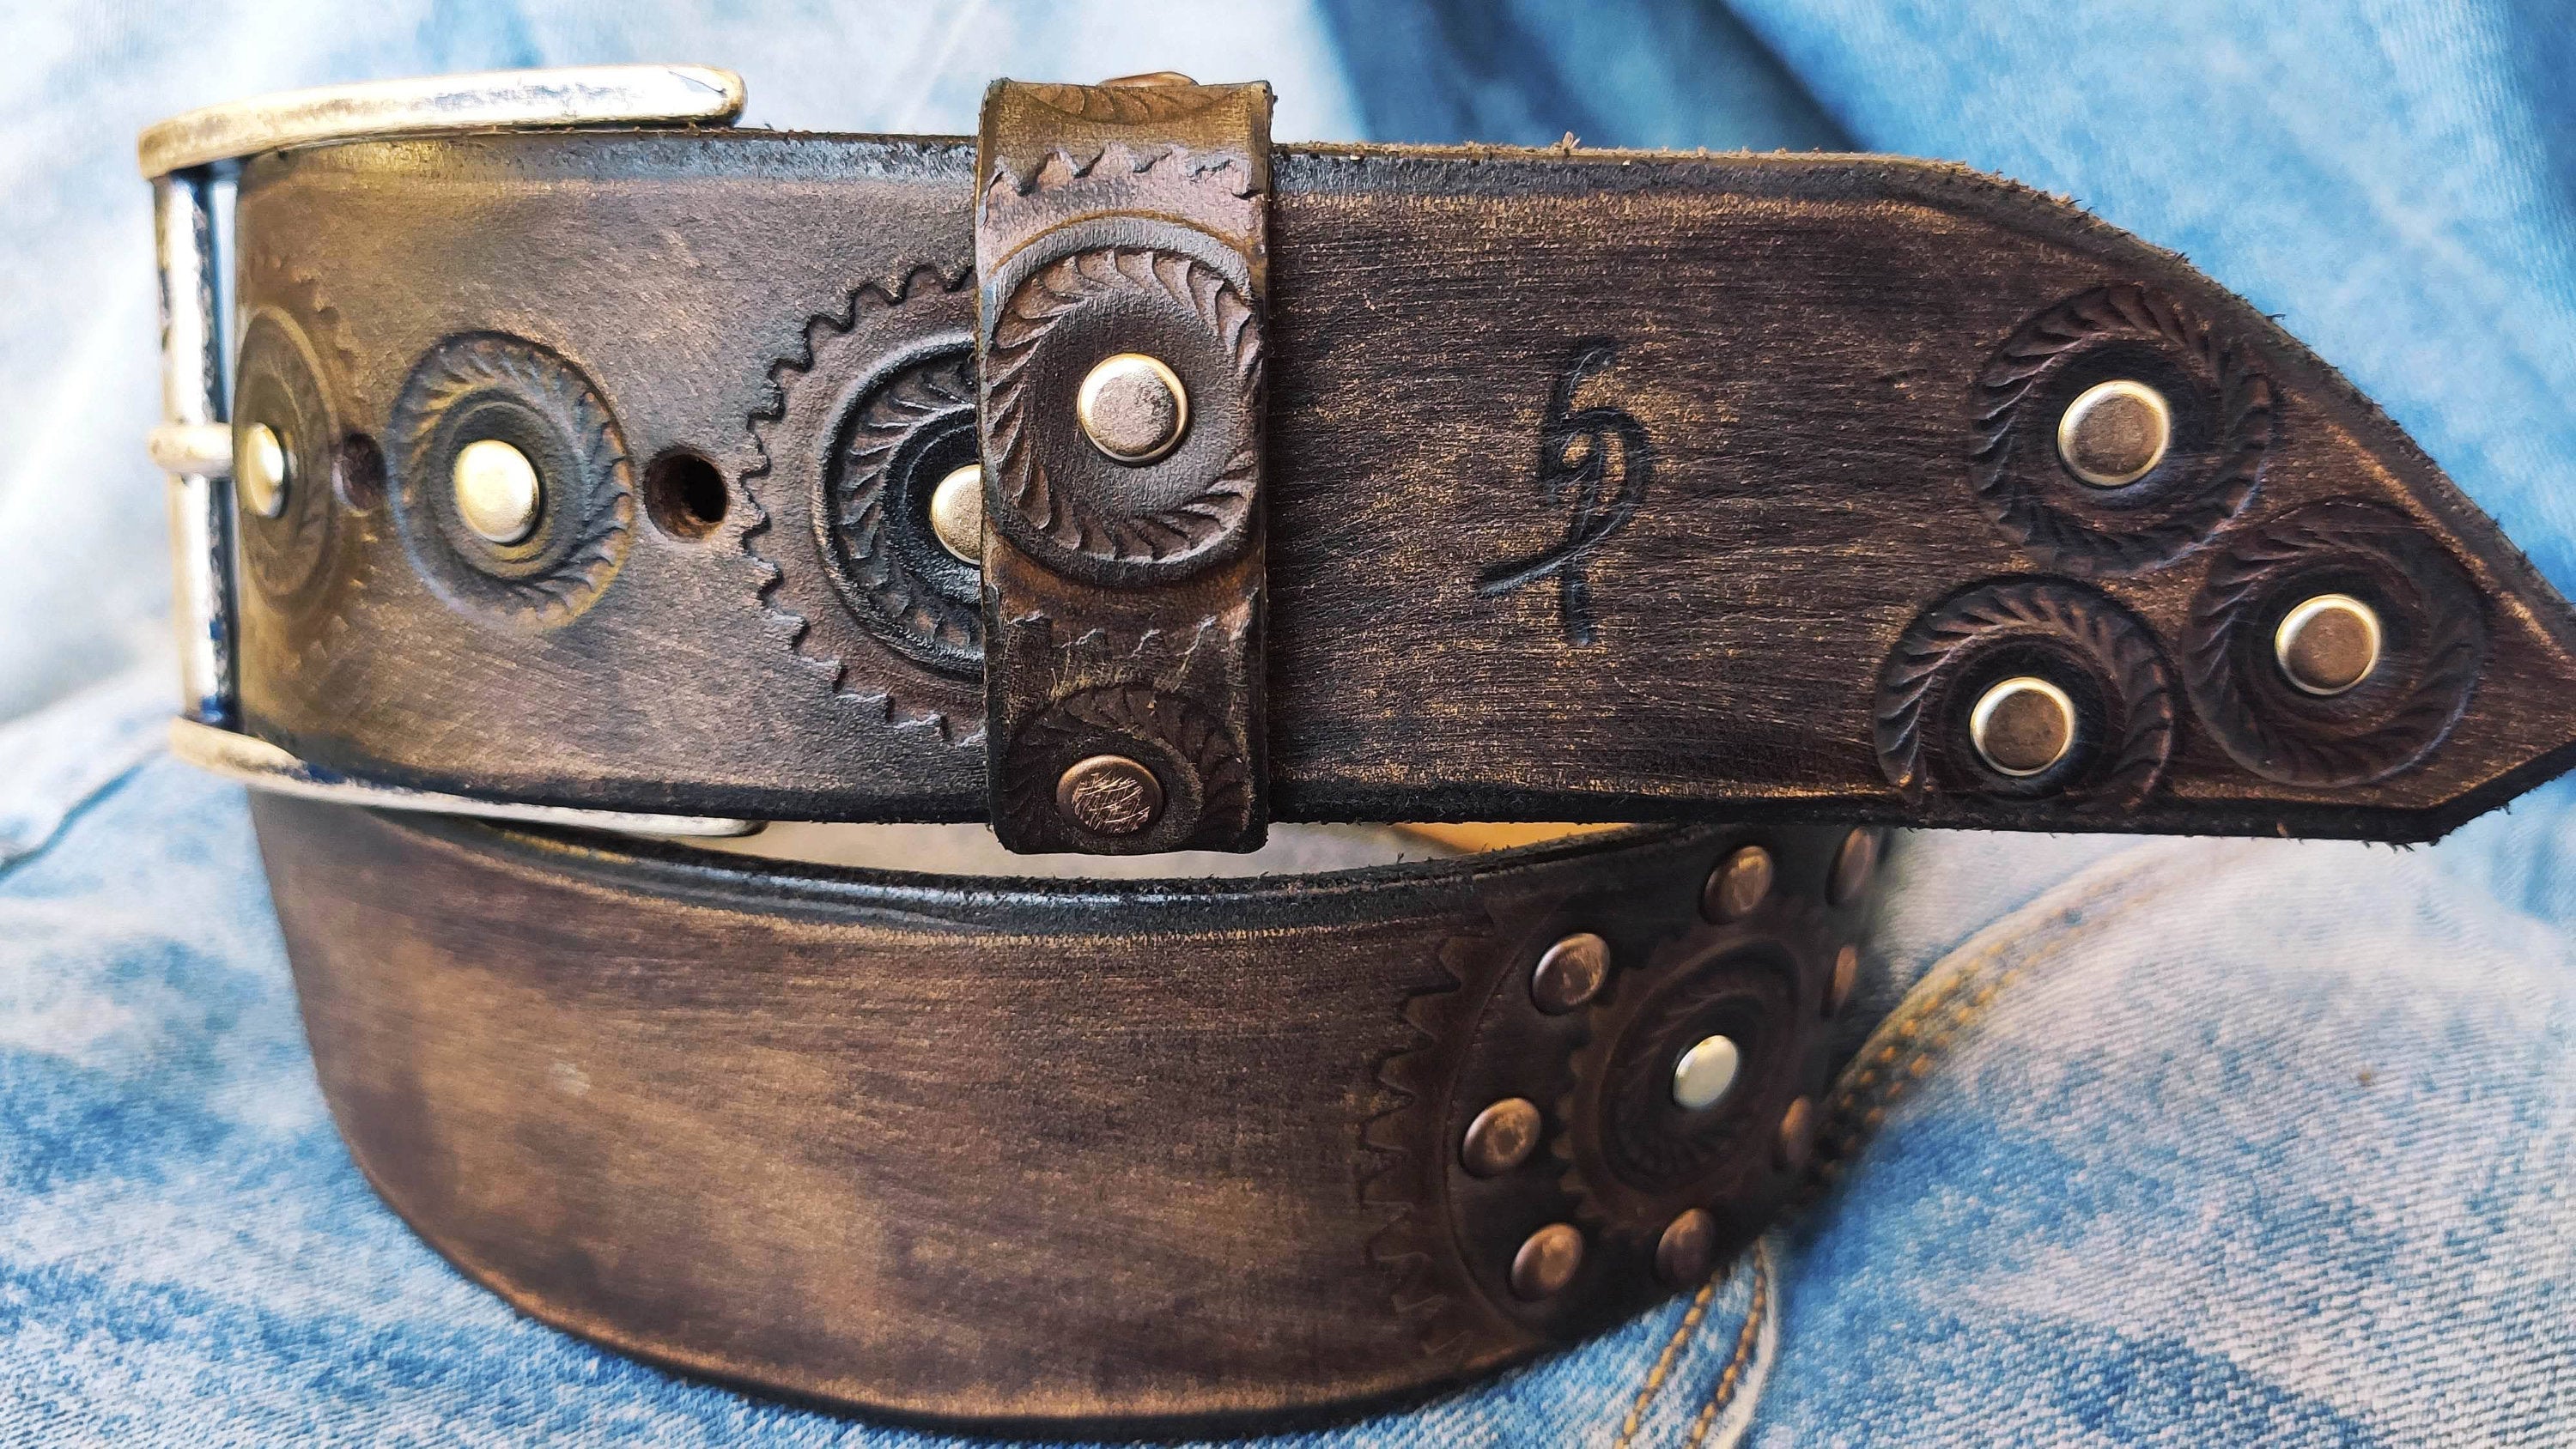 Men's Belts  Brown leather belt, Mens belts, Black leather belt